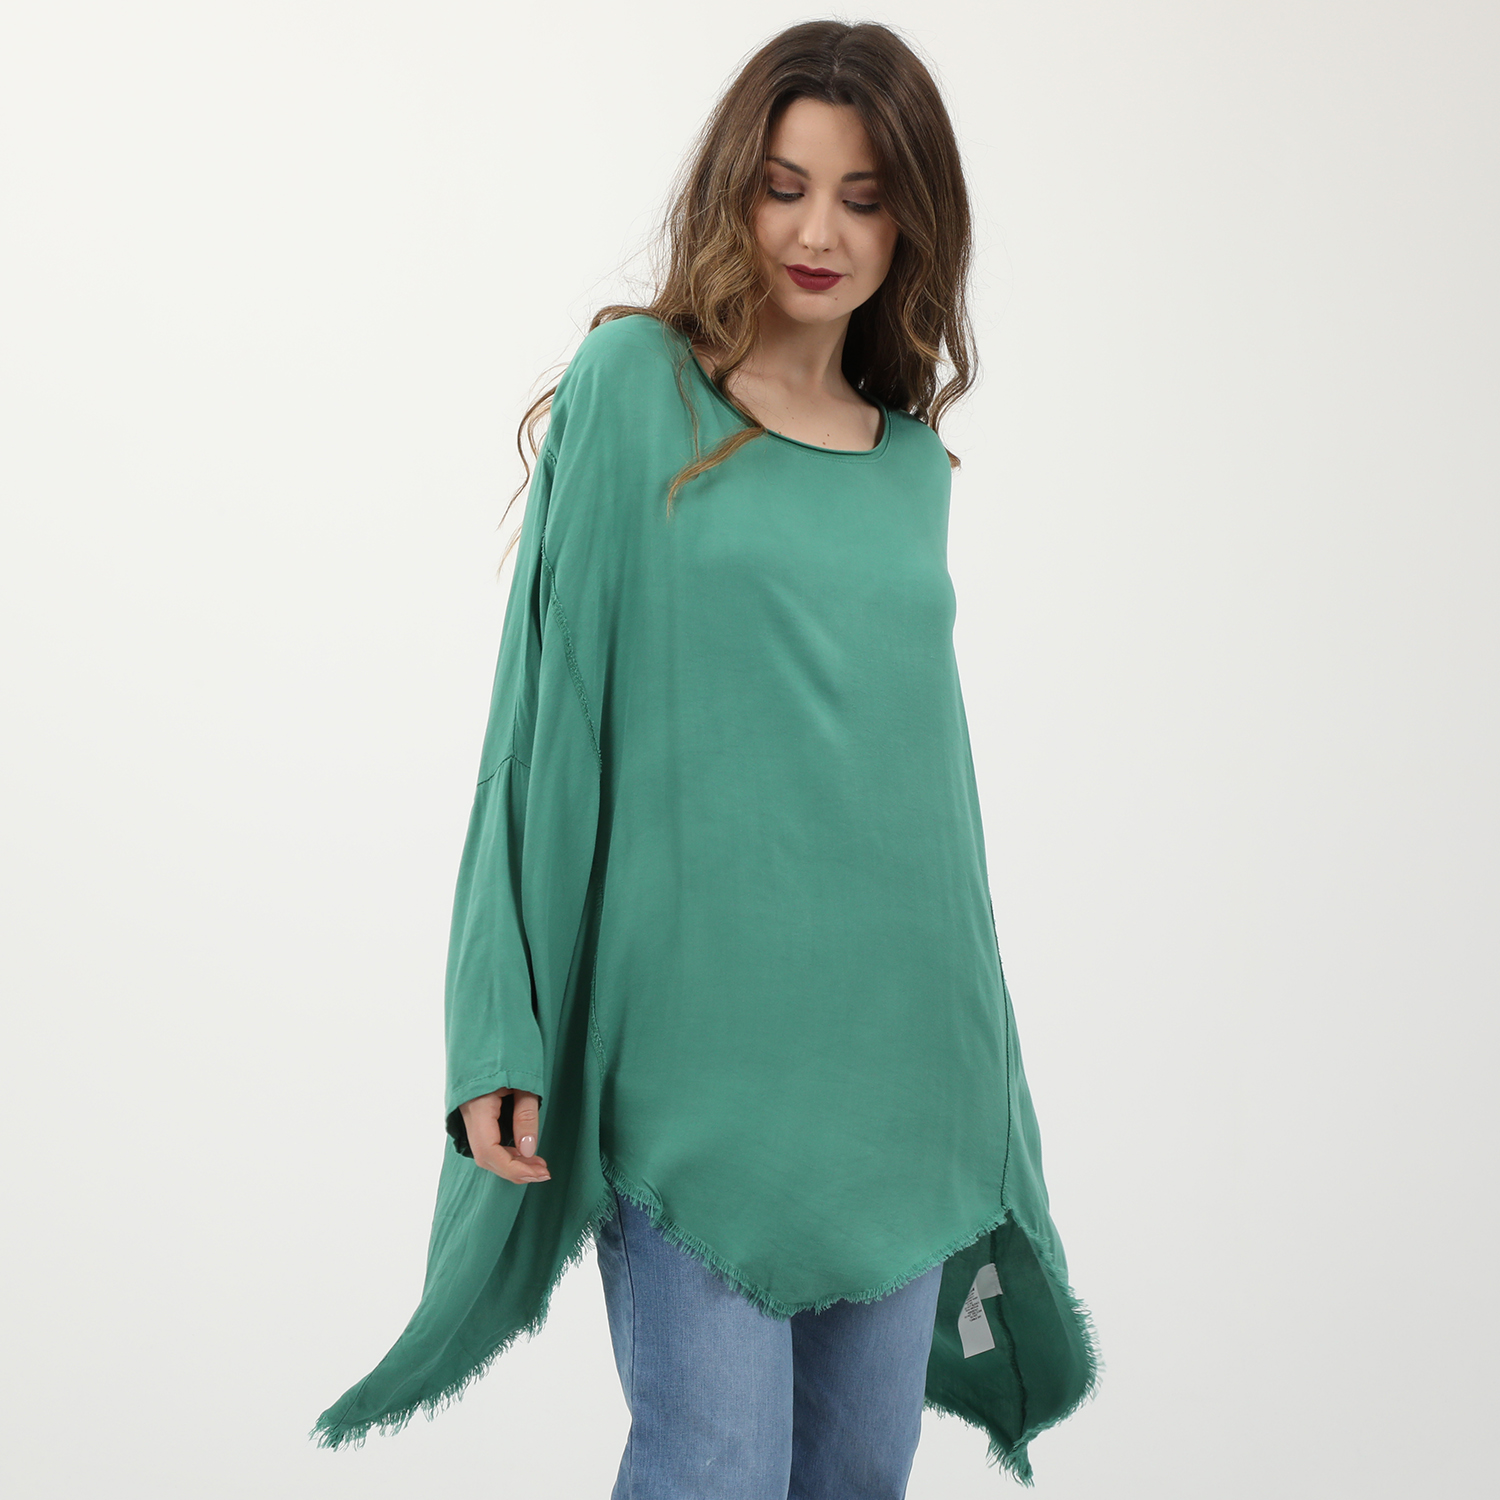 Γυναικεία/Ρούχα/Μπλούζες/Μακρυμάνικες 'ALE - Γυναικεία μακριά ασύμμετρη μπλούζα 'ALE πράσινη